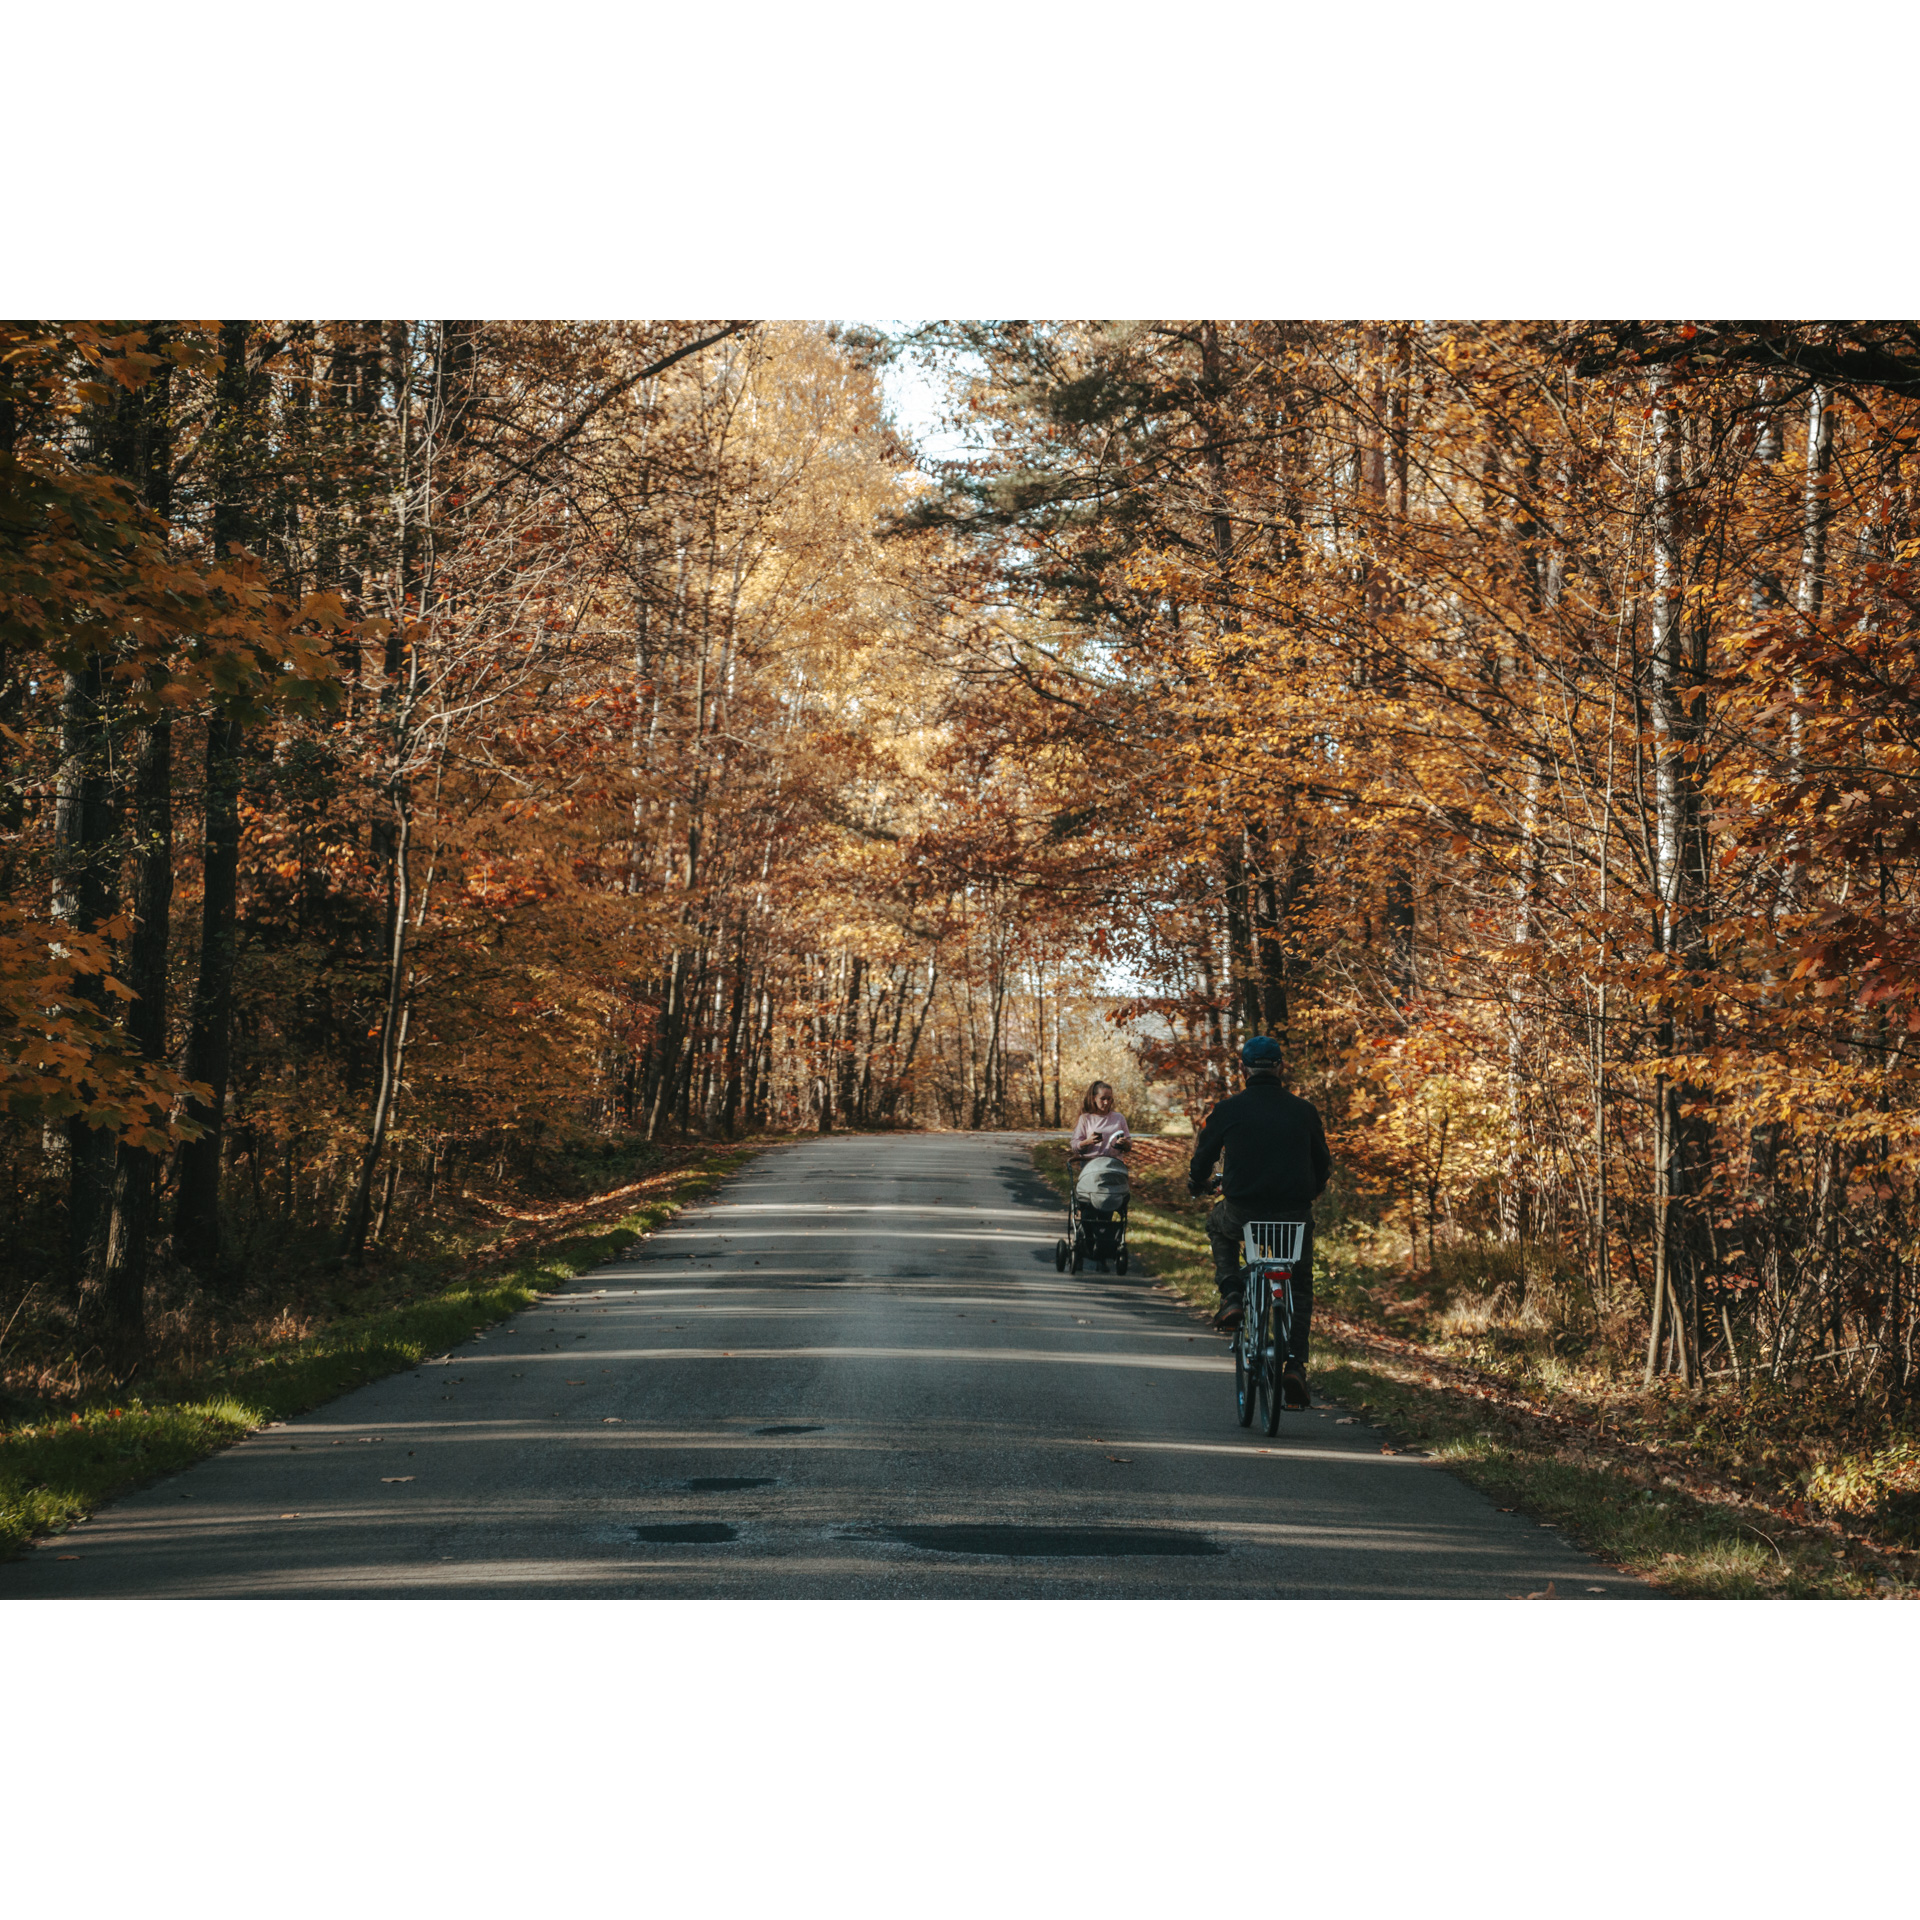 Mężczyzna na rowerze jadący asfaltową drogą prowadzącą przez las wśród wysokich drzew, zmierzający w stronę kobiety prowadzącej wózek dziecięcy